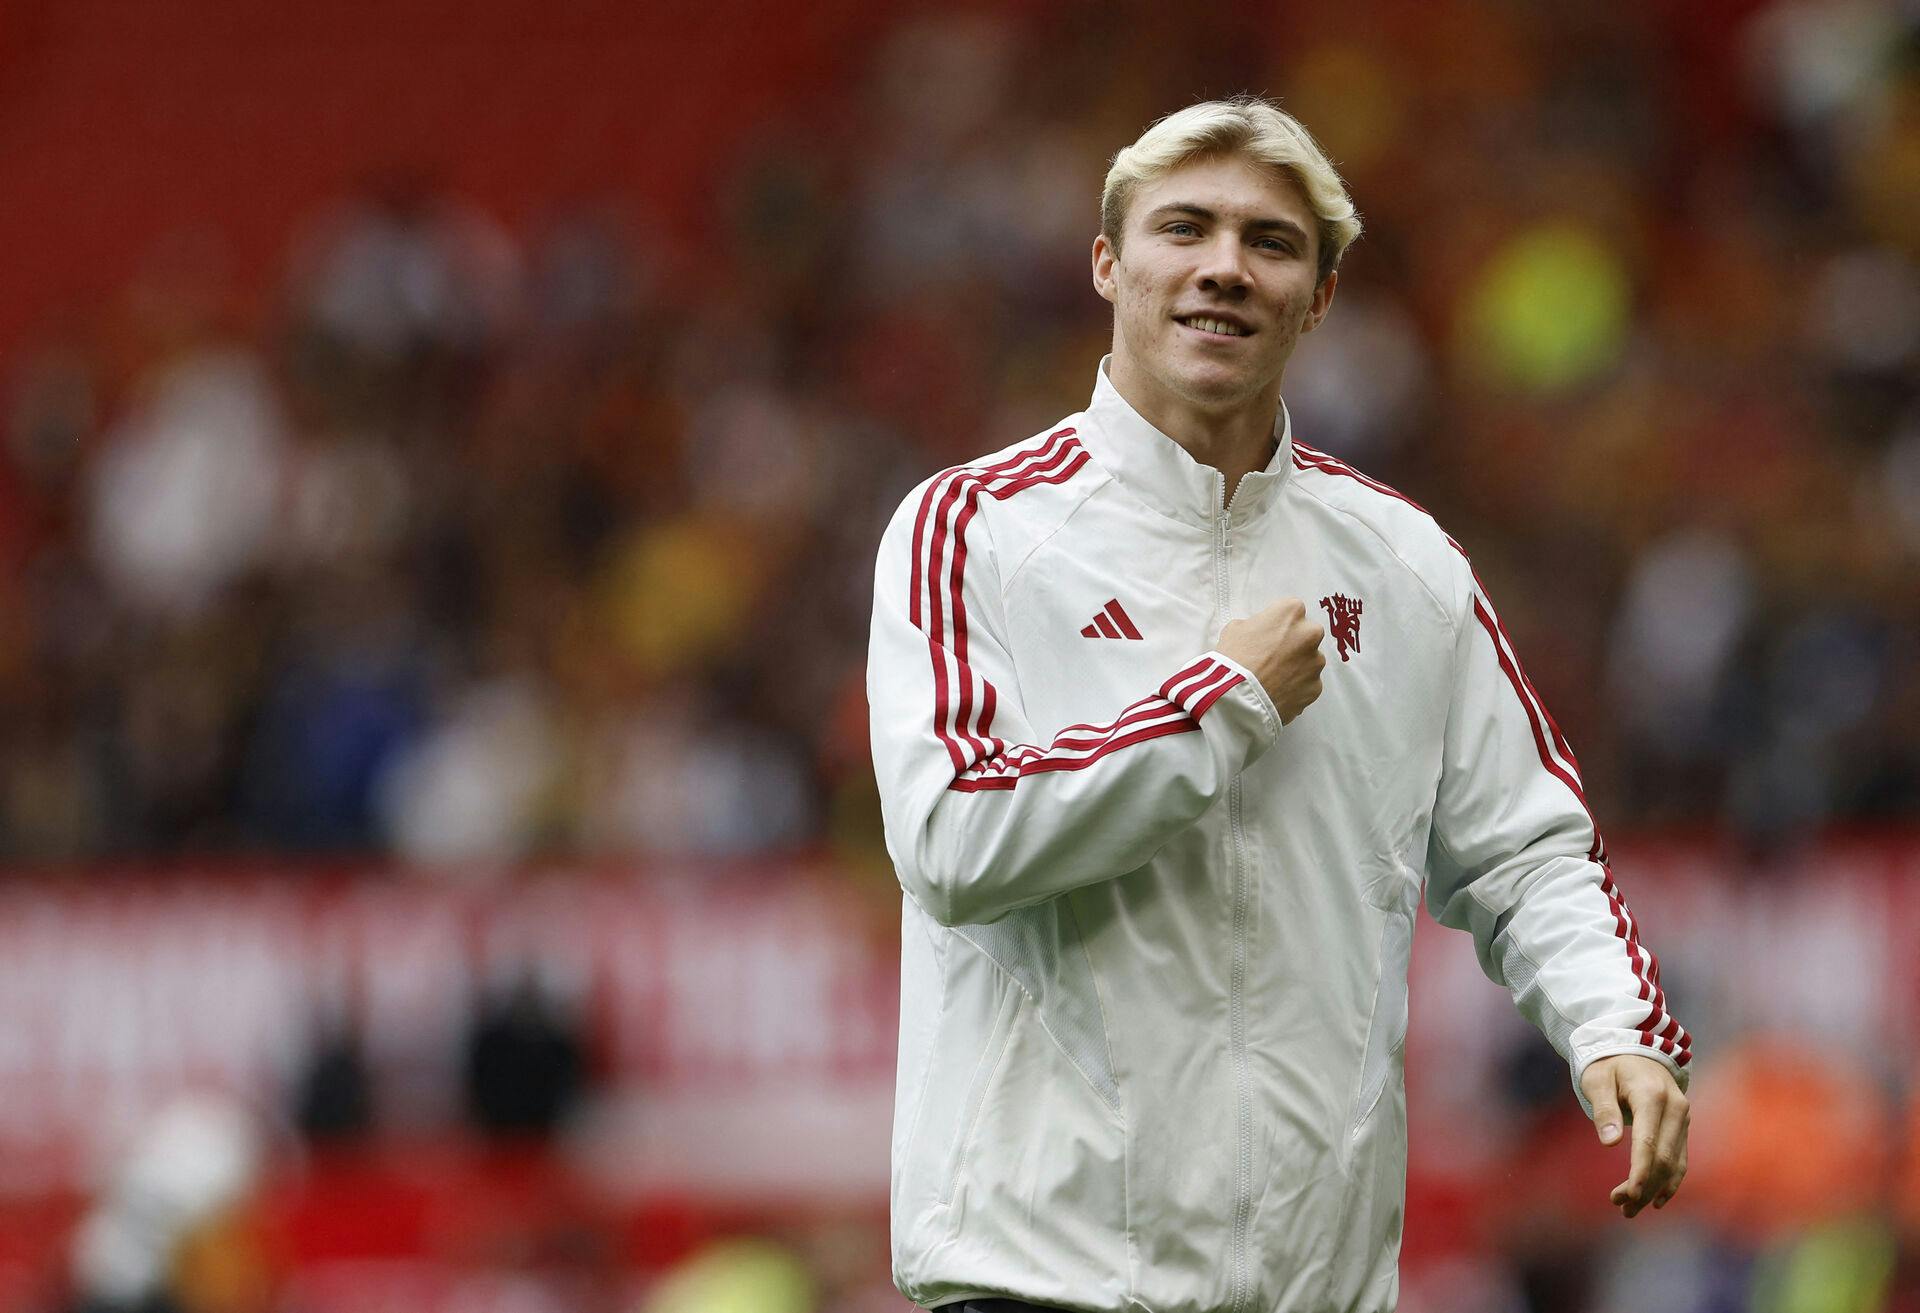 Lørdag blev det officielt, at Rasmus Højlund er blevet købt af af Manchester United.